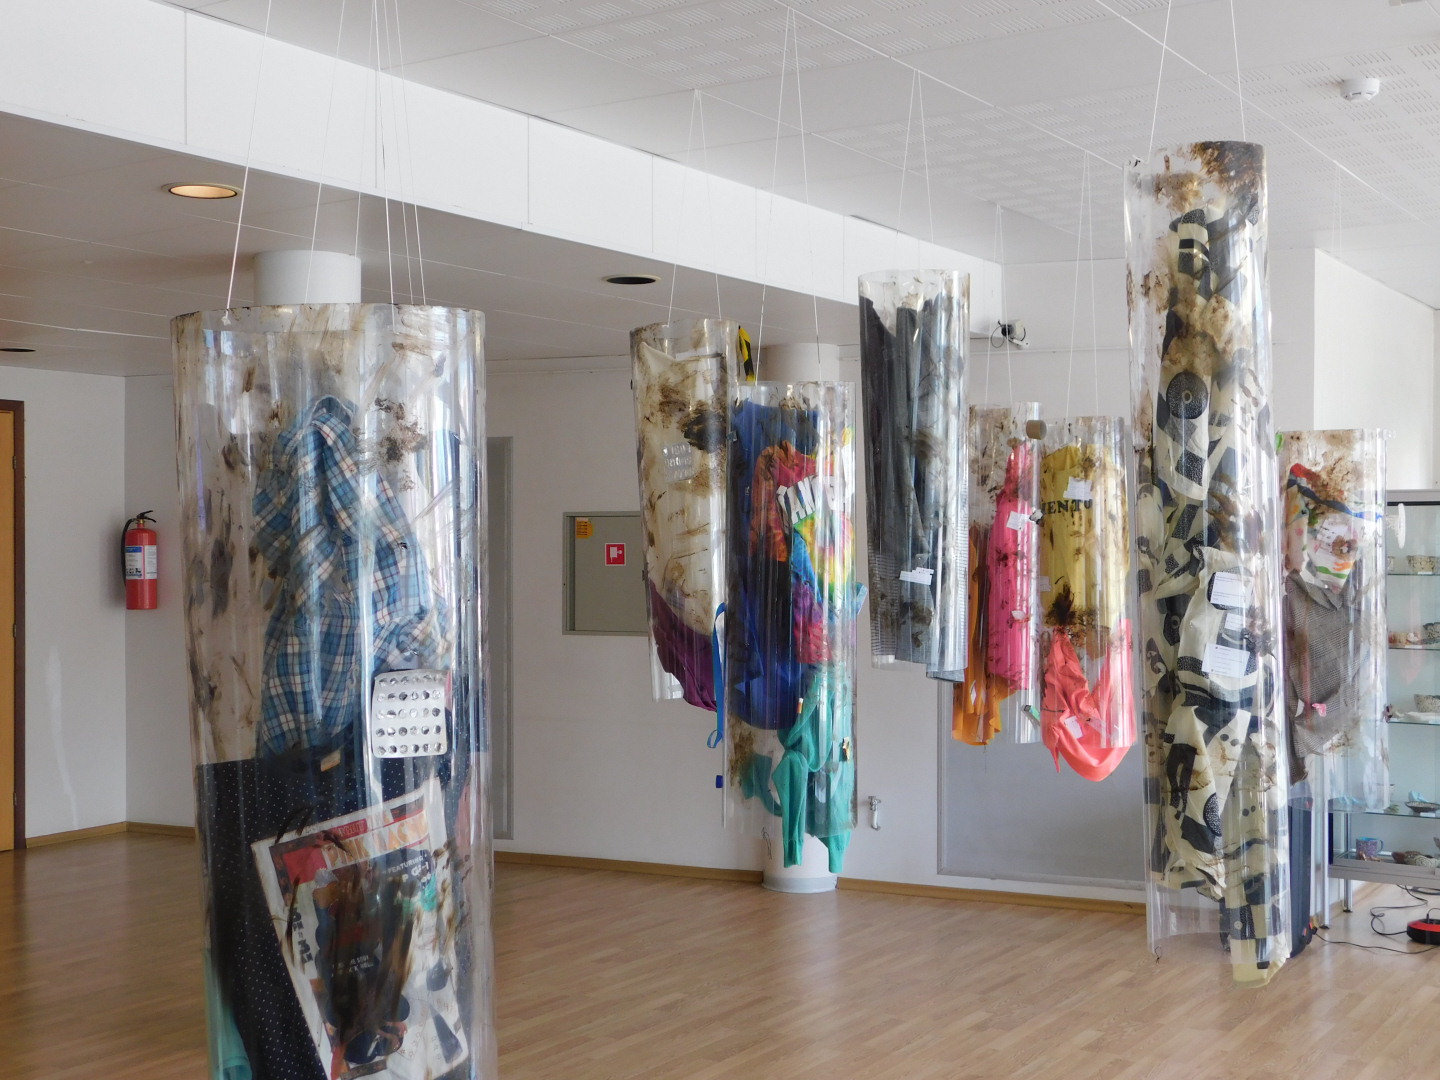 Valga Kultuuri- ja Huvialakeskuses avati 27. aprillil sotsiaalkunstiprojekt “Empaatia stimulatsioon”. Kunstiprojekti autorid, Tartu 2024 noorte kaasaegse kunsti